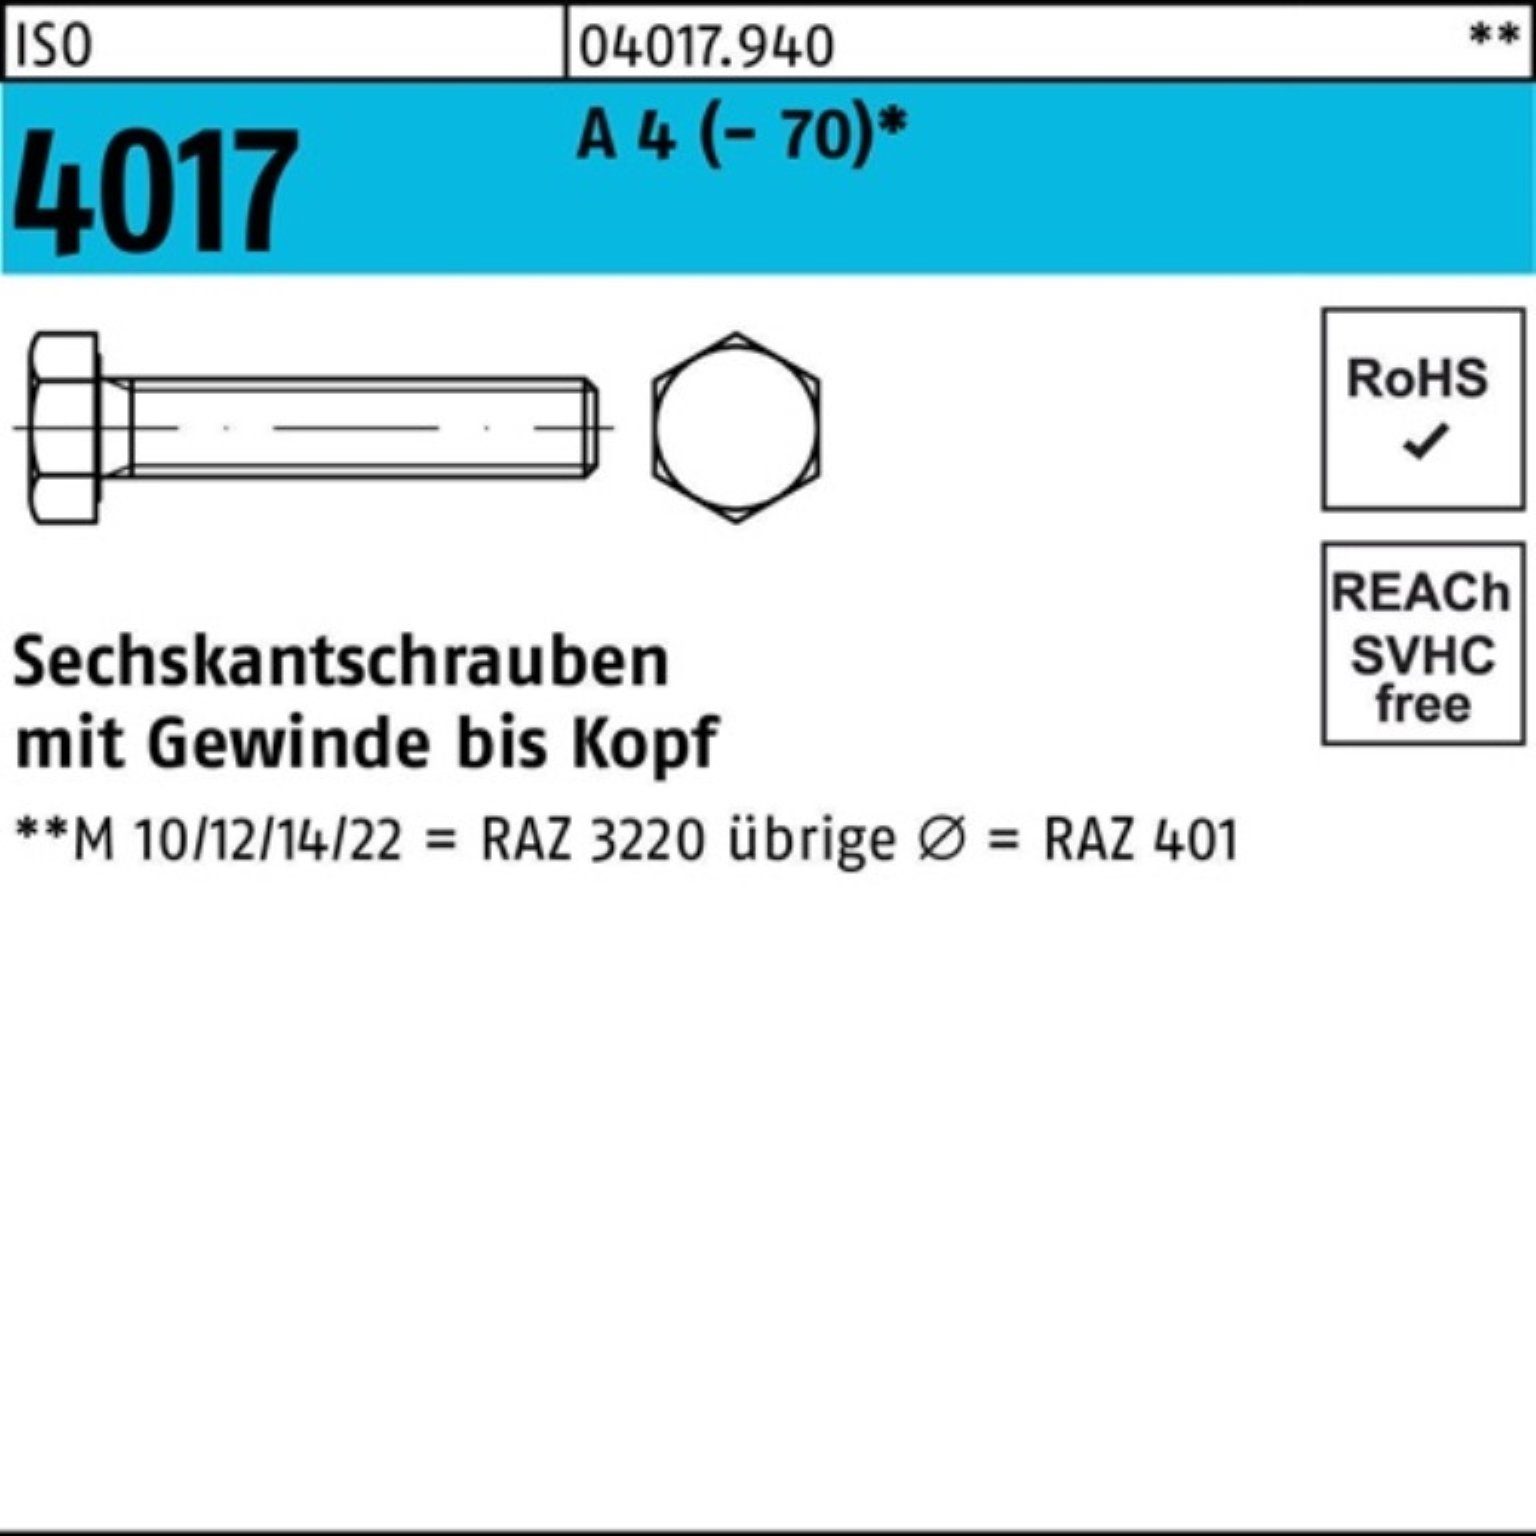 Bufab Sechskantschraube 100er Pack Sechskantschraube ISO 4017 VG M12x 30 A 4 (70) 100 Stück